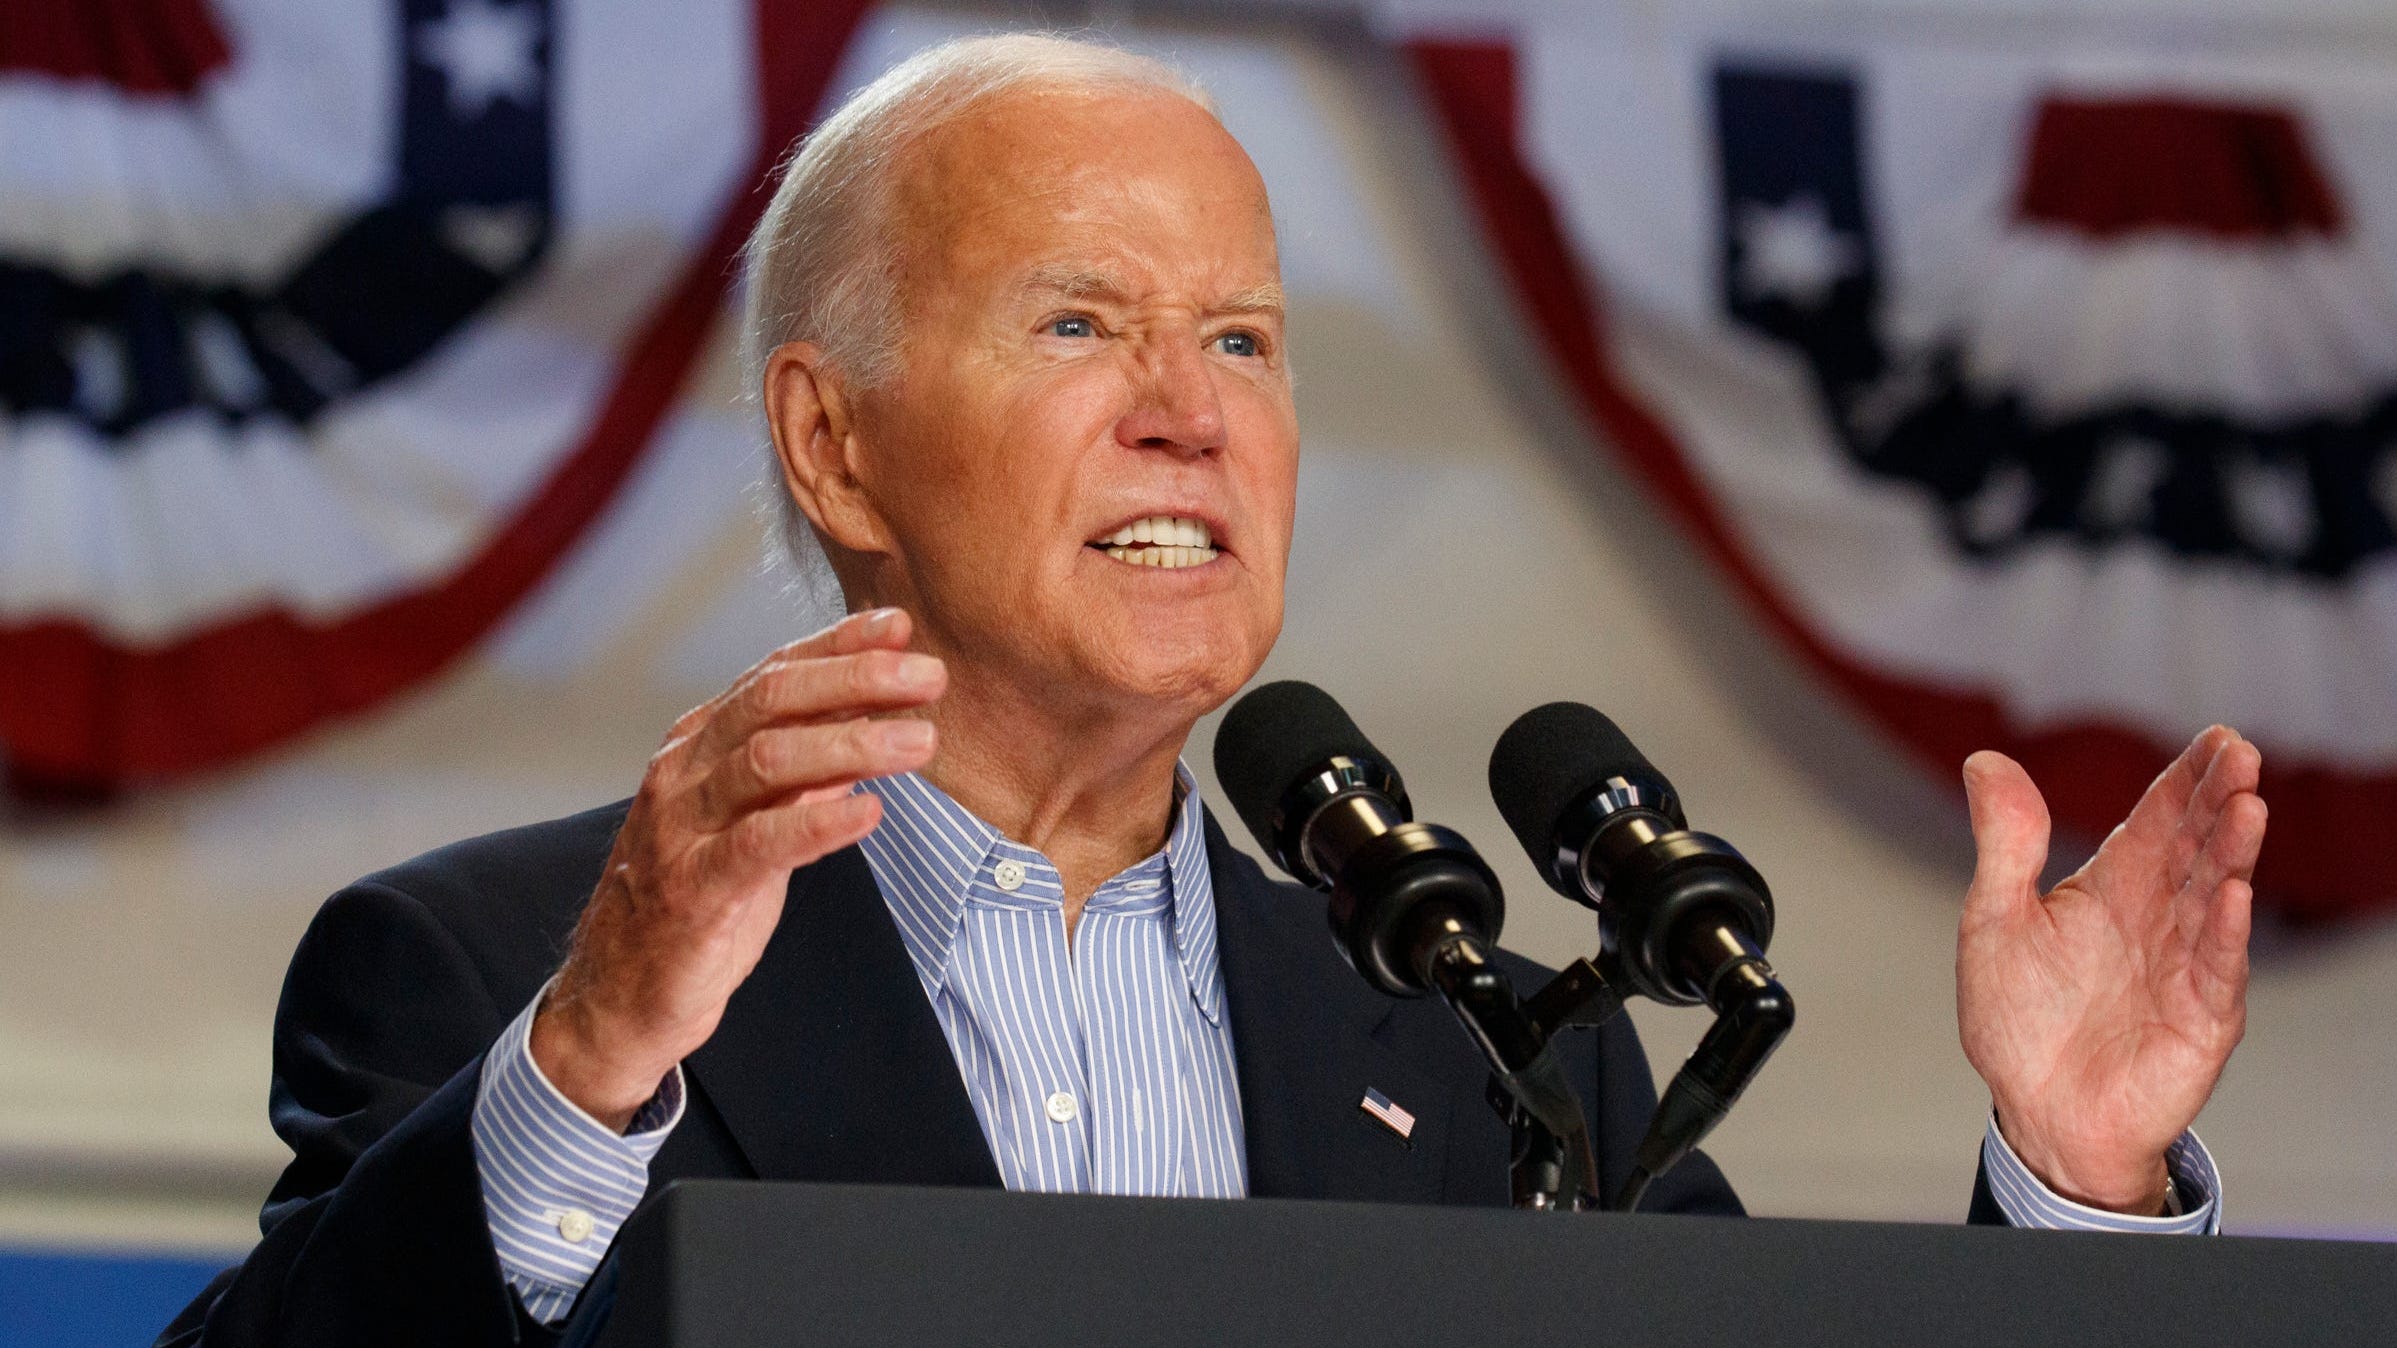 'Still in good shape' Joe Biden bargains with America to stay in race